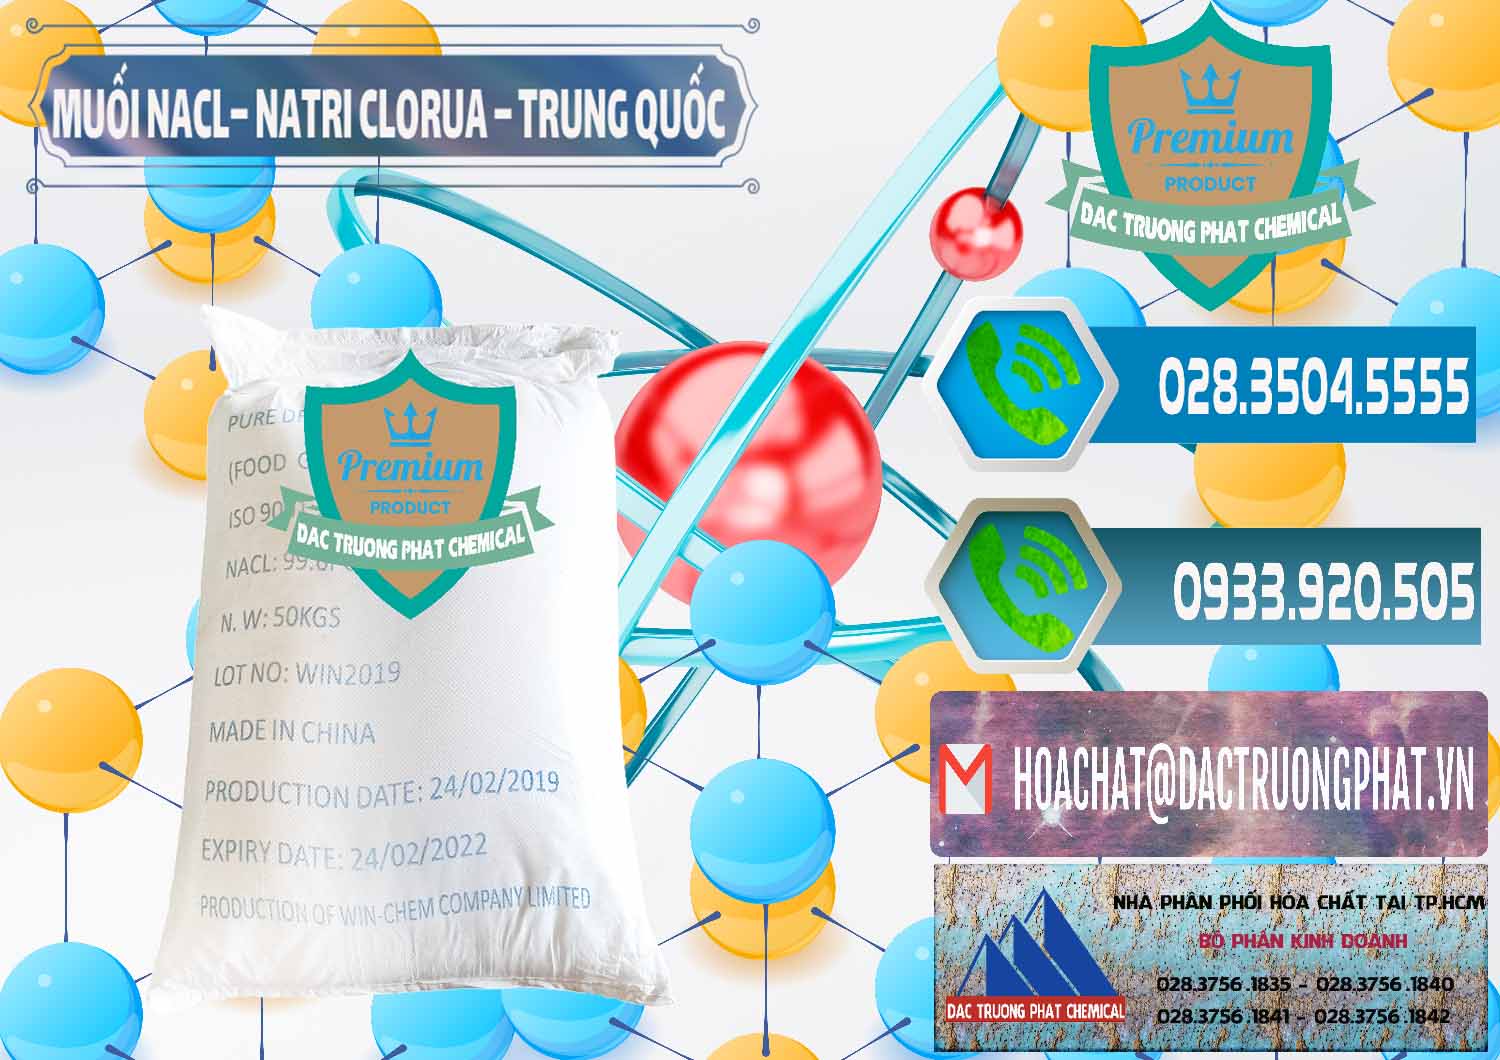 Cty chuyên bán _ cung ứng Muối NaCL – Sodium Chloride Trung Quốc China - 0097 - Đơn vị chuyên nhập khẩu _ phân phối hóa chất tại TP.HCM - congtyhoachat.net